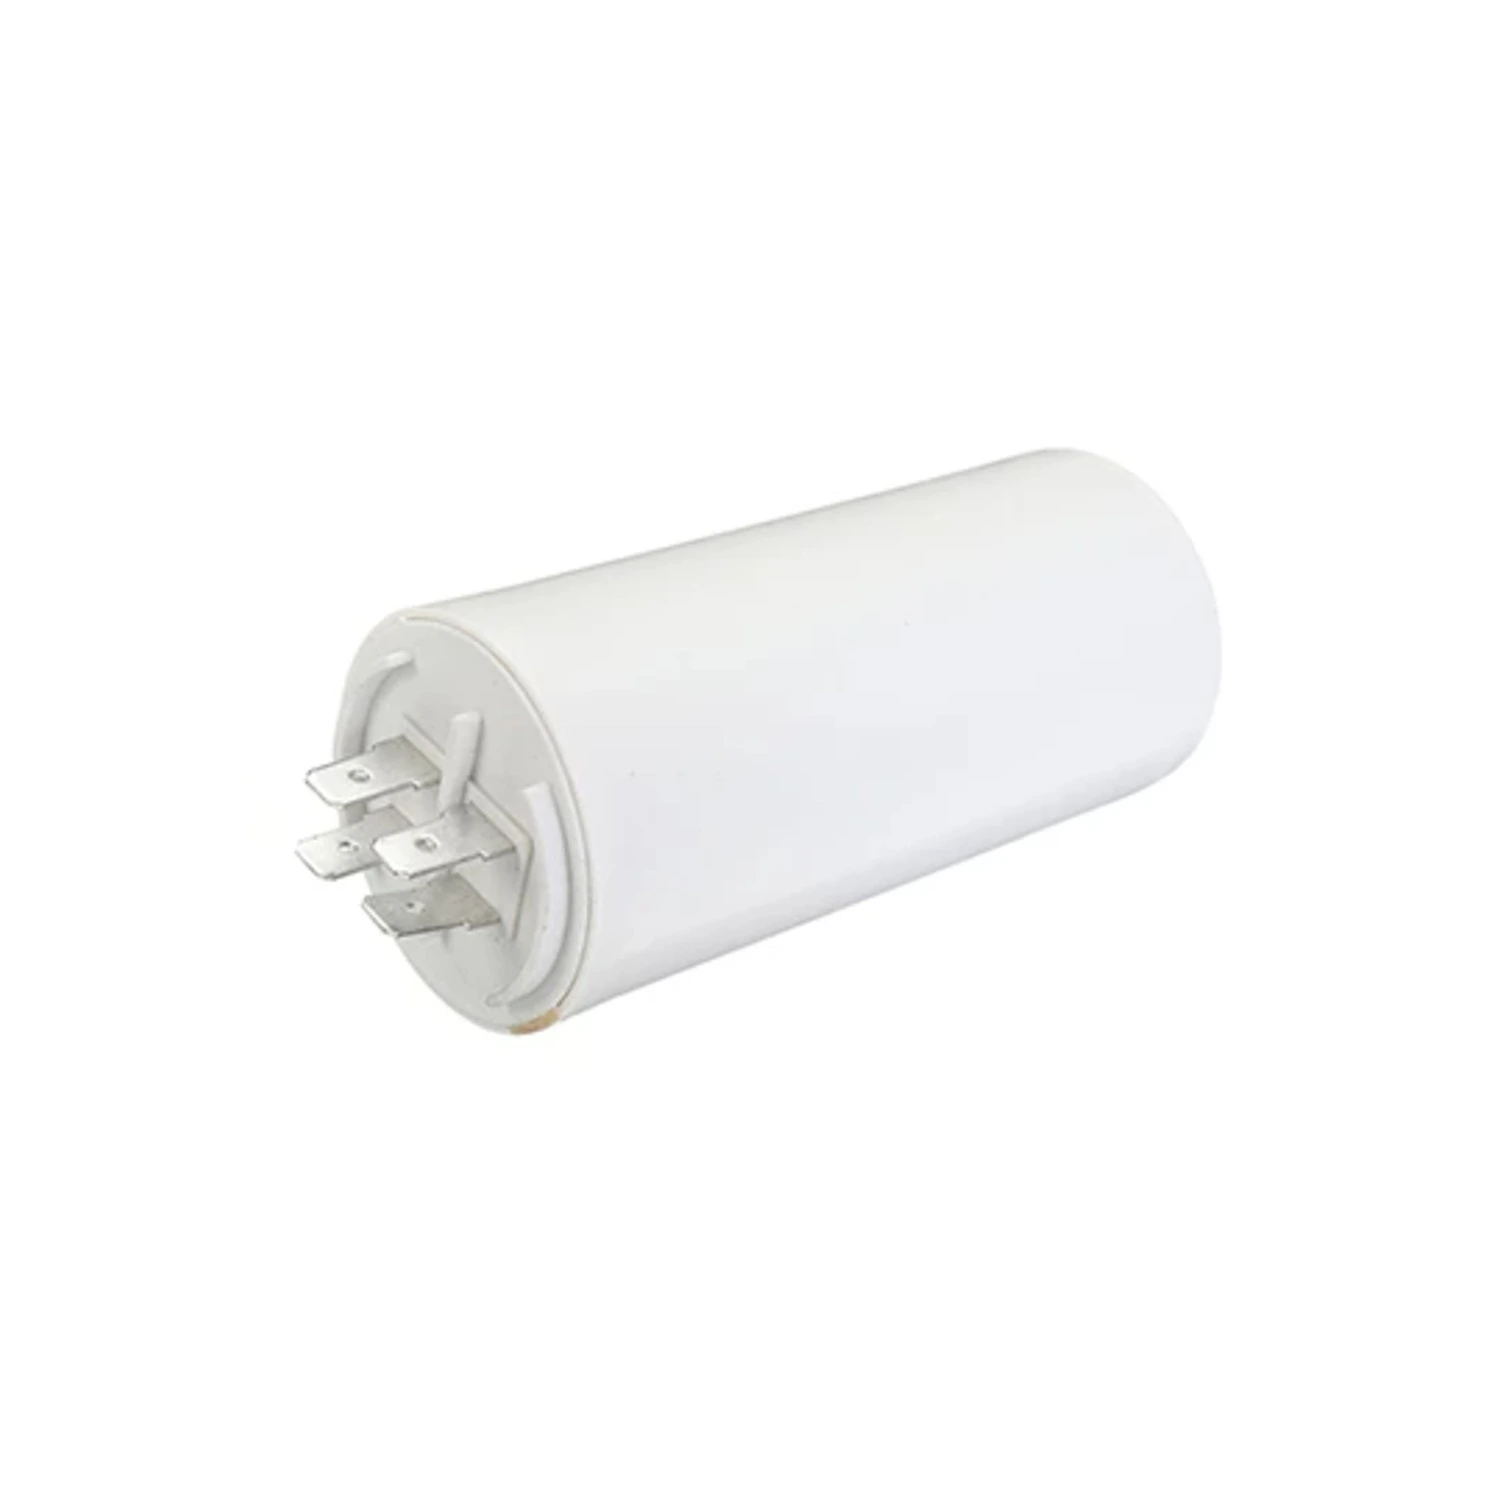 immagine del prodotto condensatore di spunto 2 poli con terra CE bianco 450 volt 25 uf wnt 97997